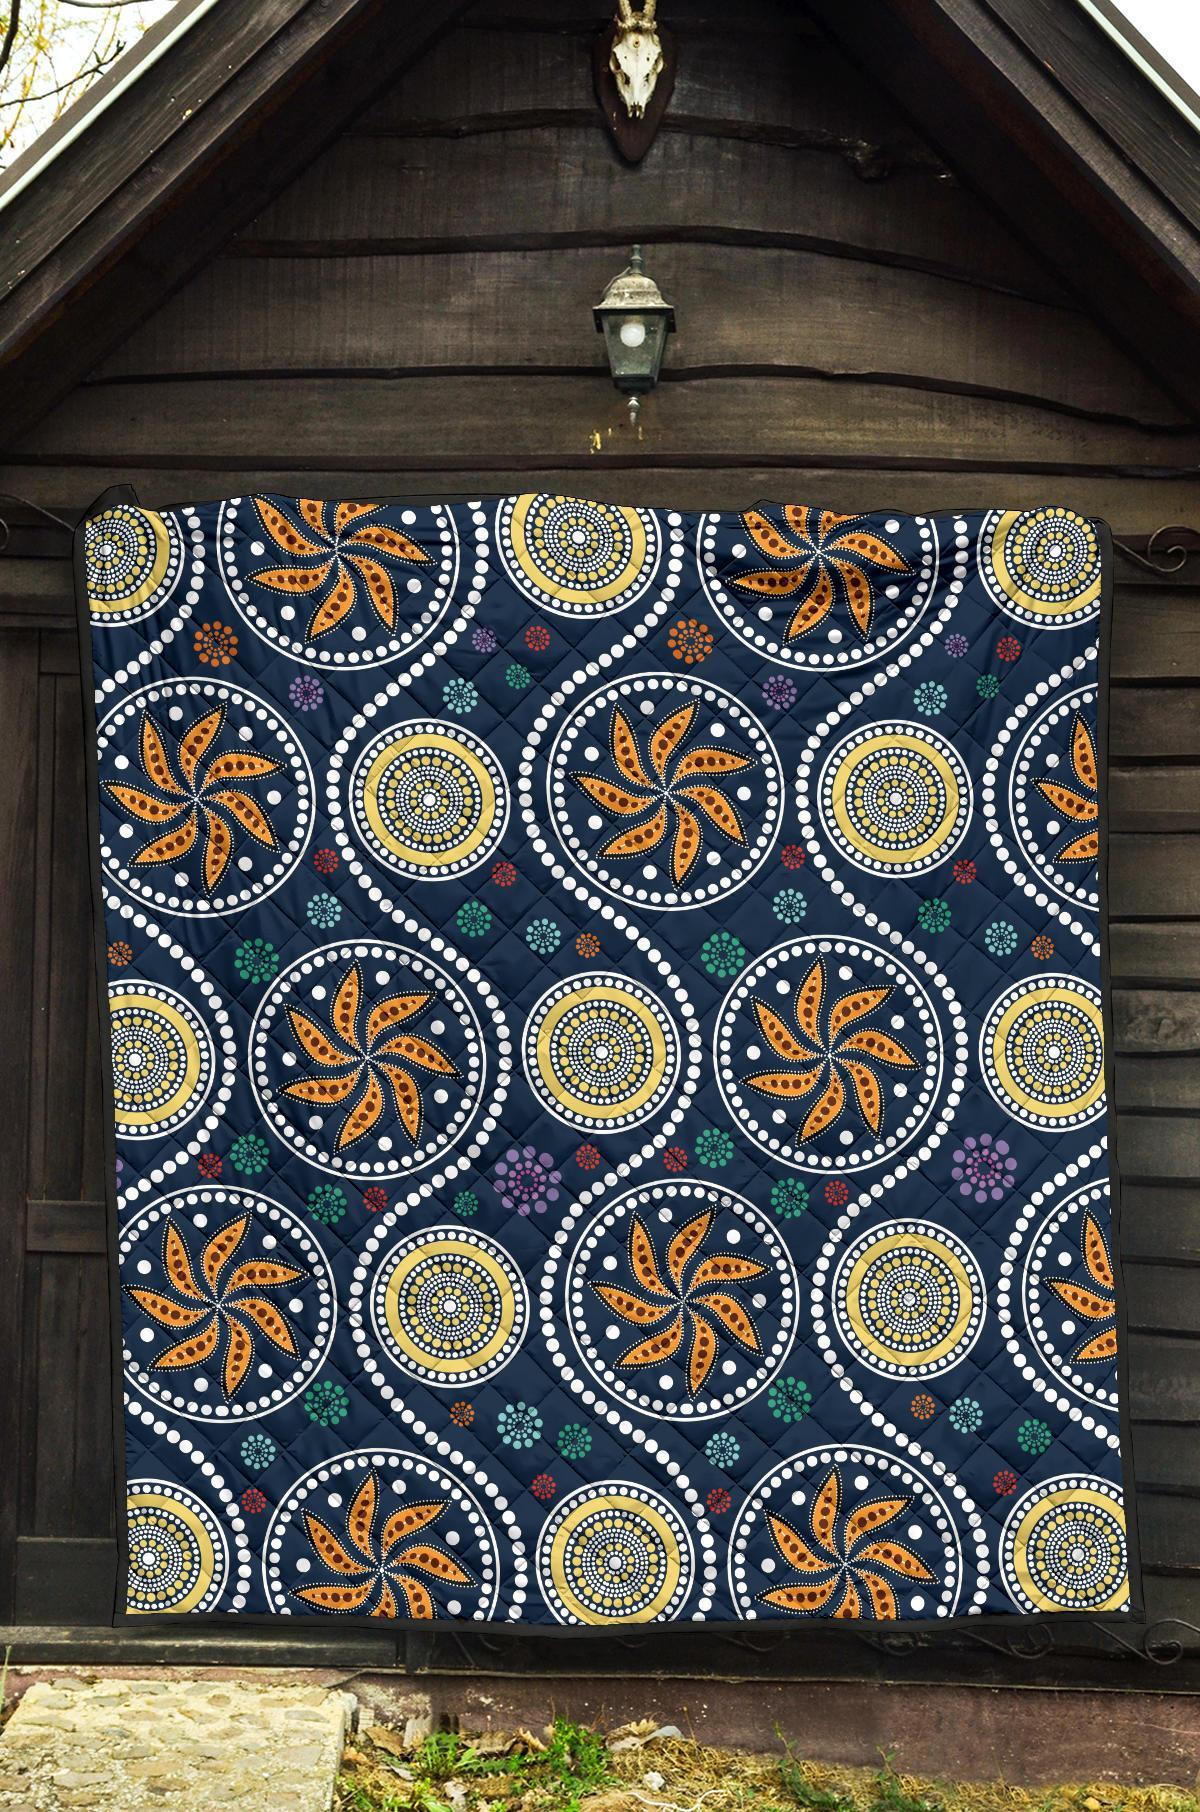 Aboriginal Premium Quilt - Indigenous Patterns Ver06